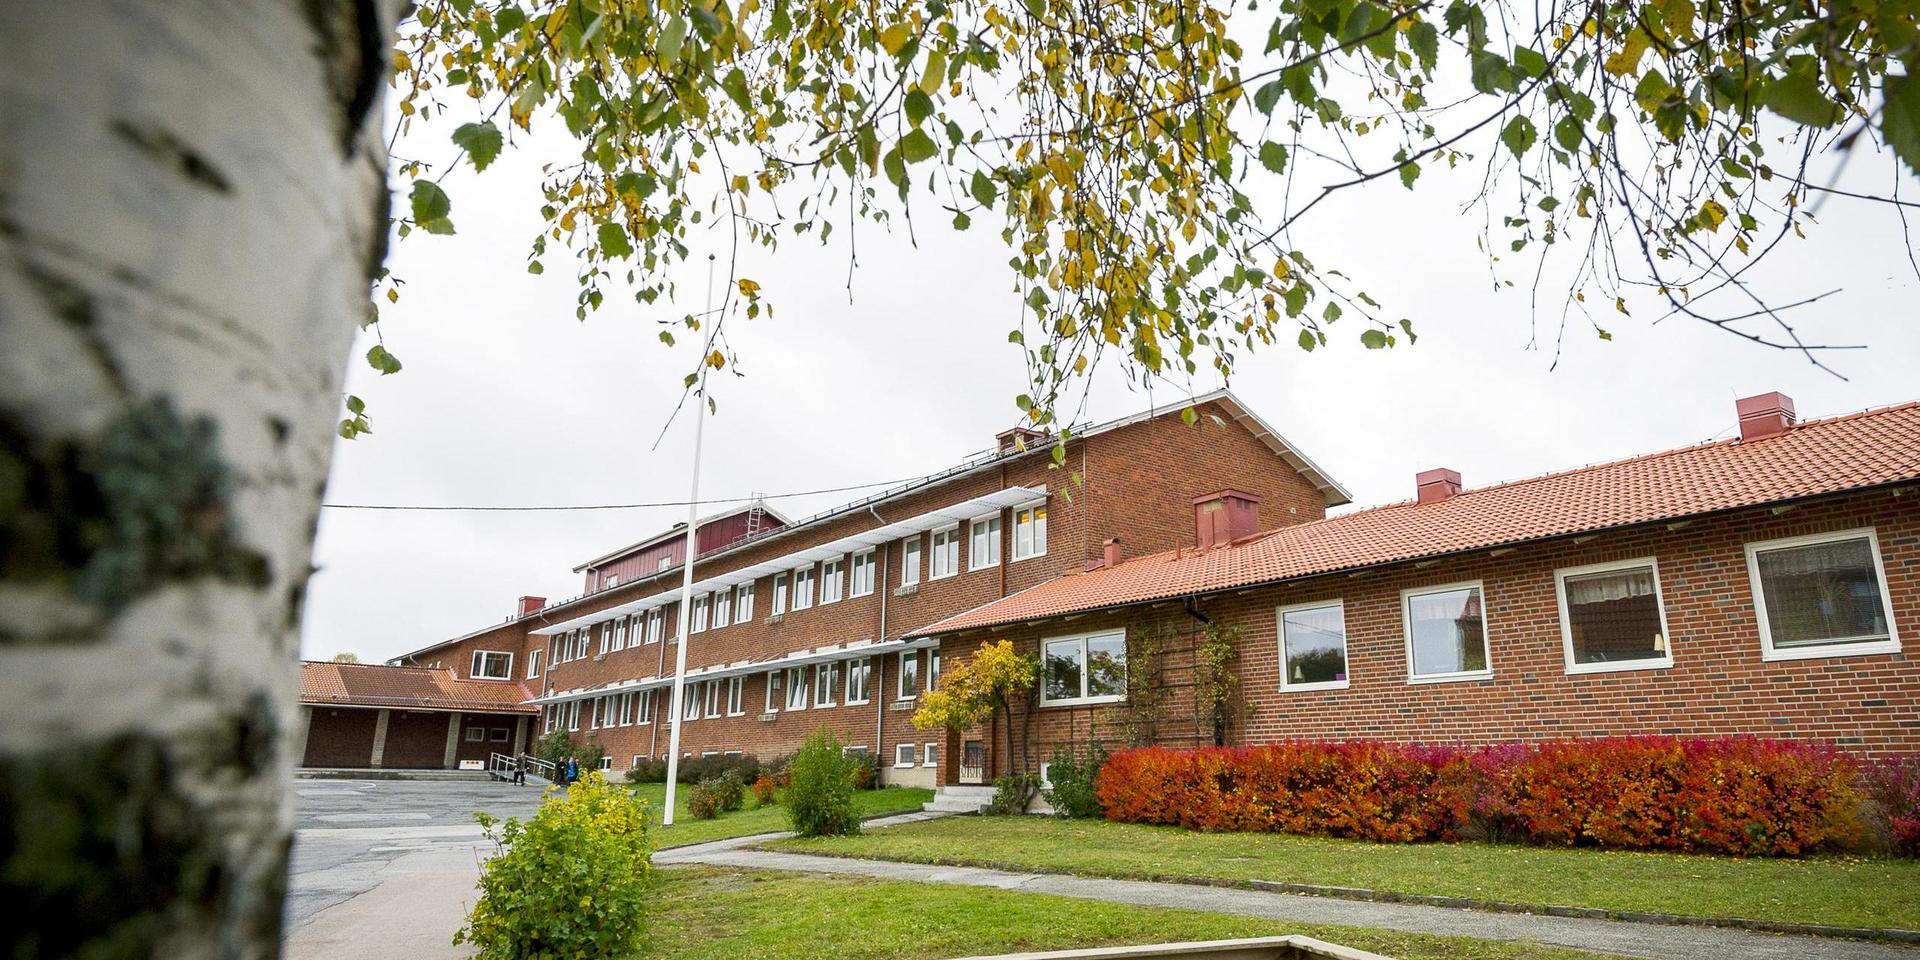 Munkedalsskolan (bilden) och Bruksskolan har potential för utbyggnad eller renovering i stället för att som förslag bygga en ny mellanstadieskola i Munkedals centrum, menar skribenten.